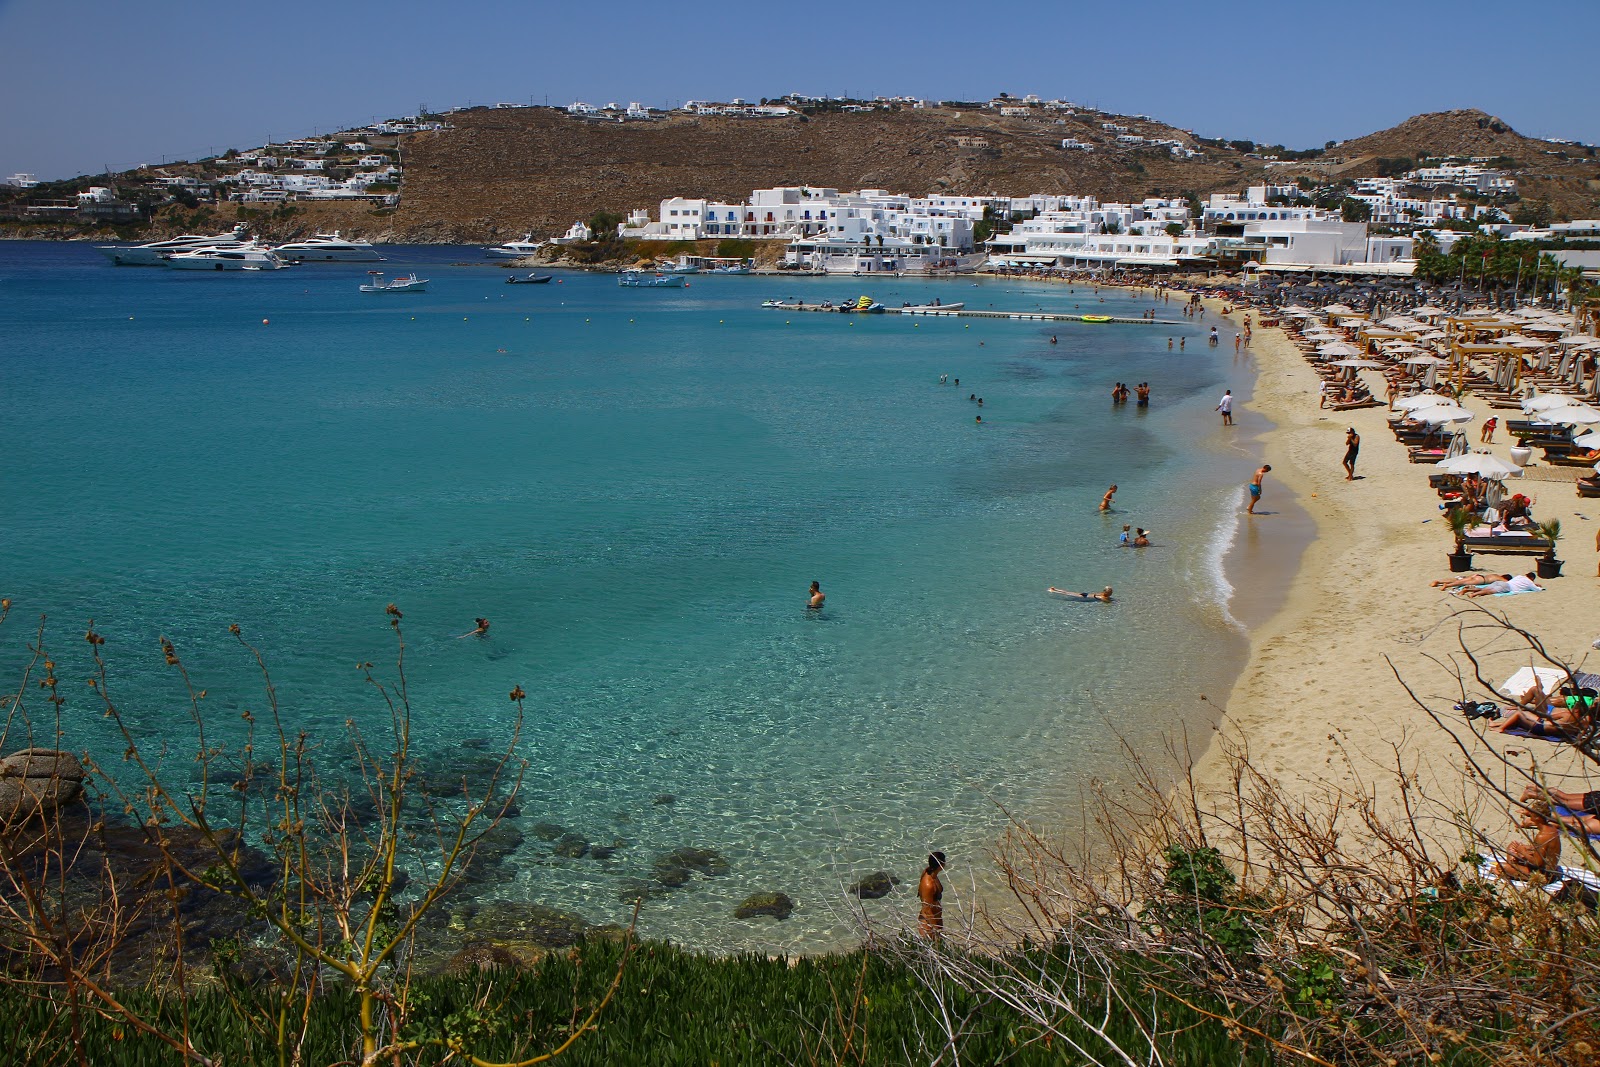 Platis Gialos Plajı'in fotoğrafı geniş ile birlikte